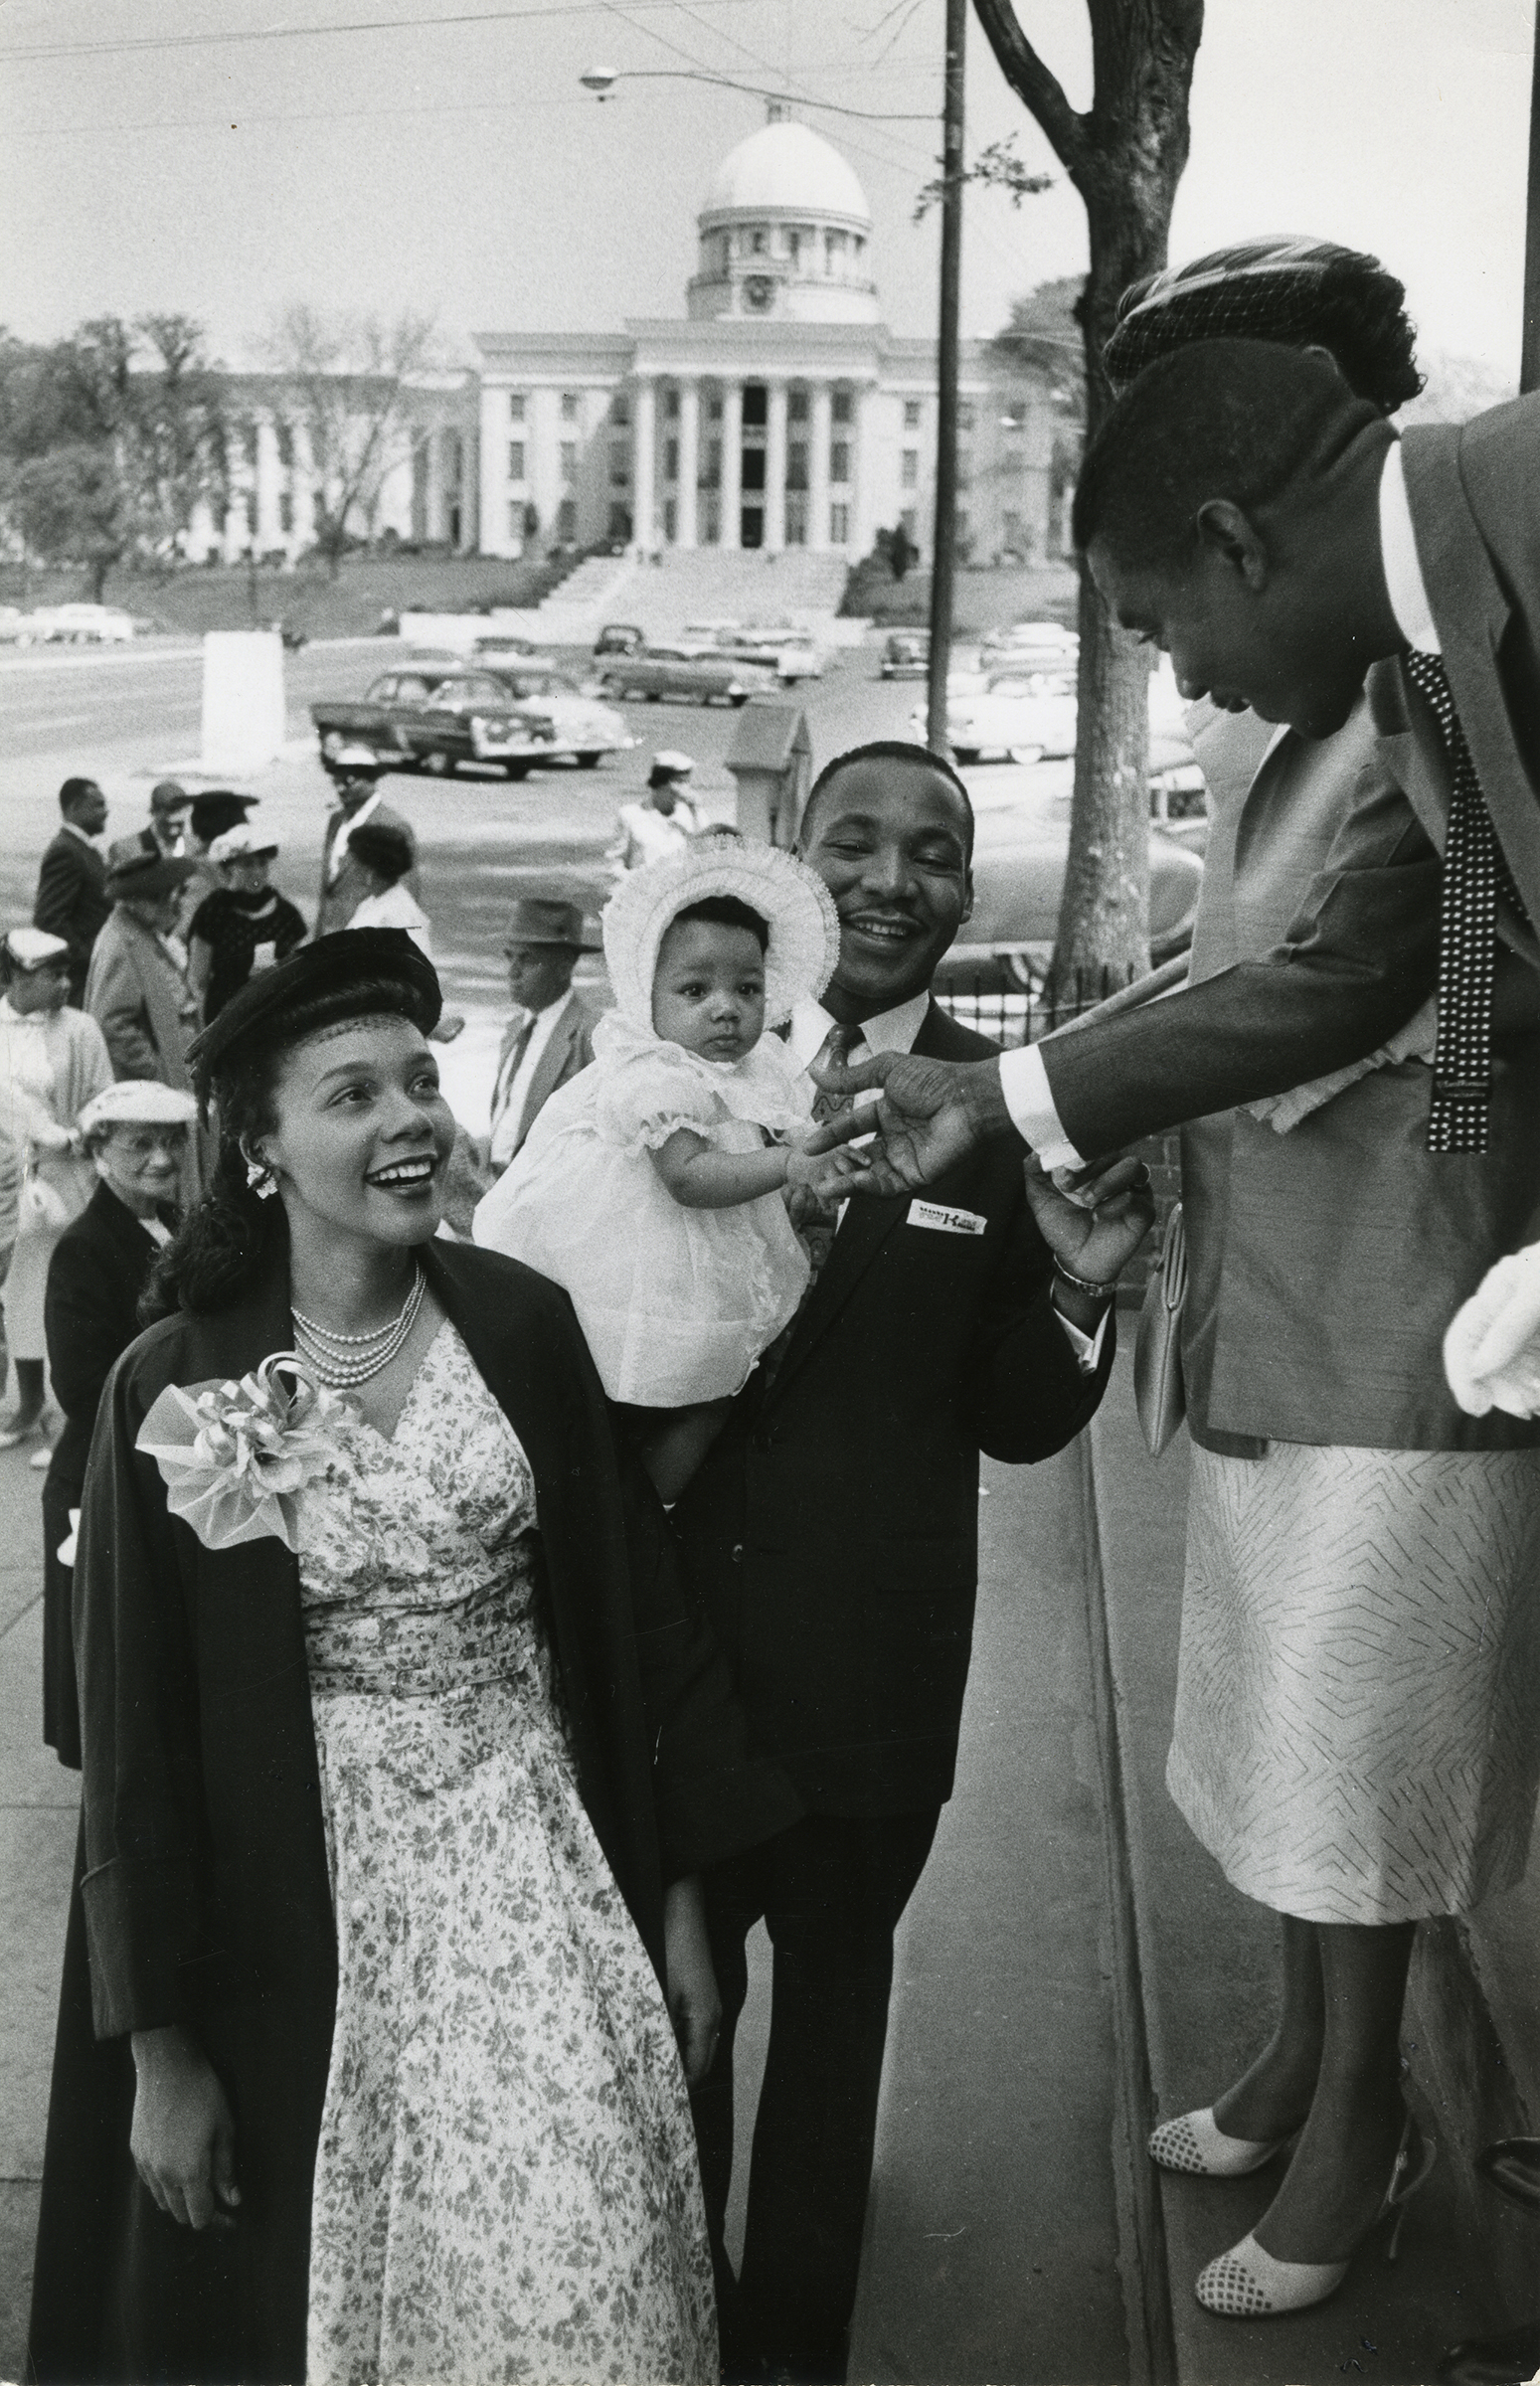 Martin and Coretta Scott King with their daughter Yolanda, Dexter Avenue Baptist Church, 1956 (Photograph by Dan Weiner / © John Broderick)